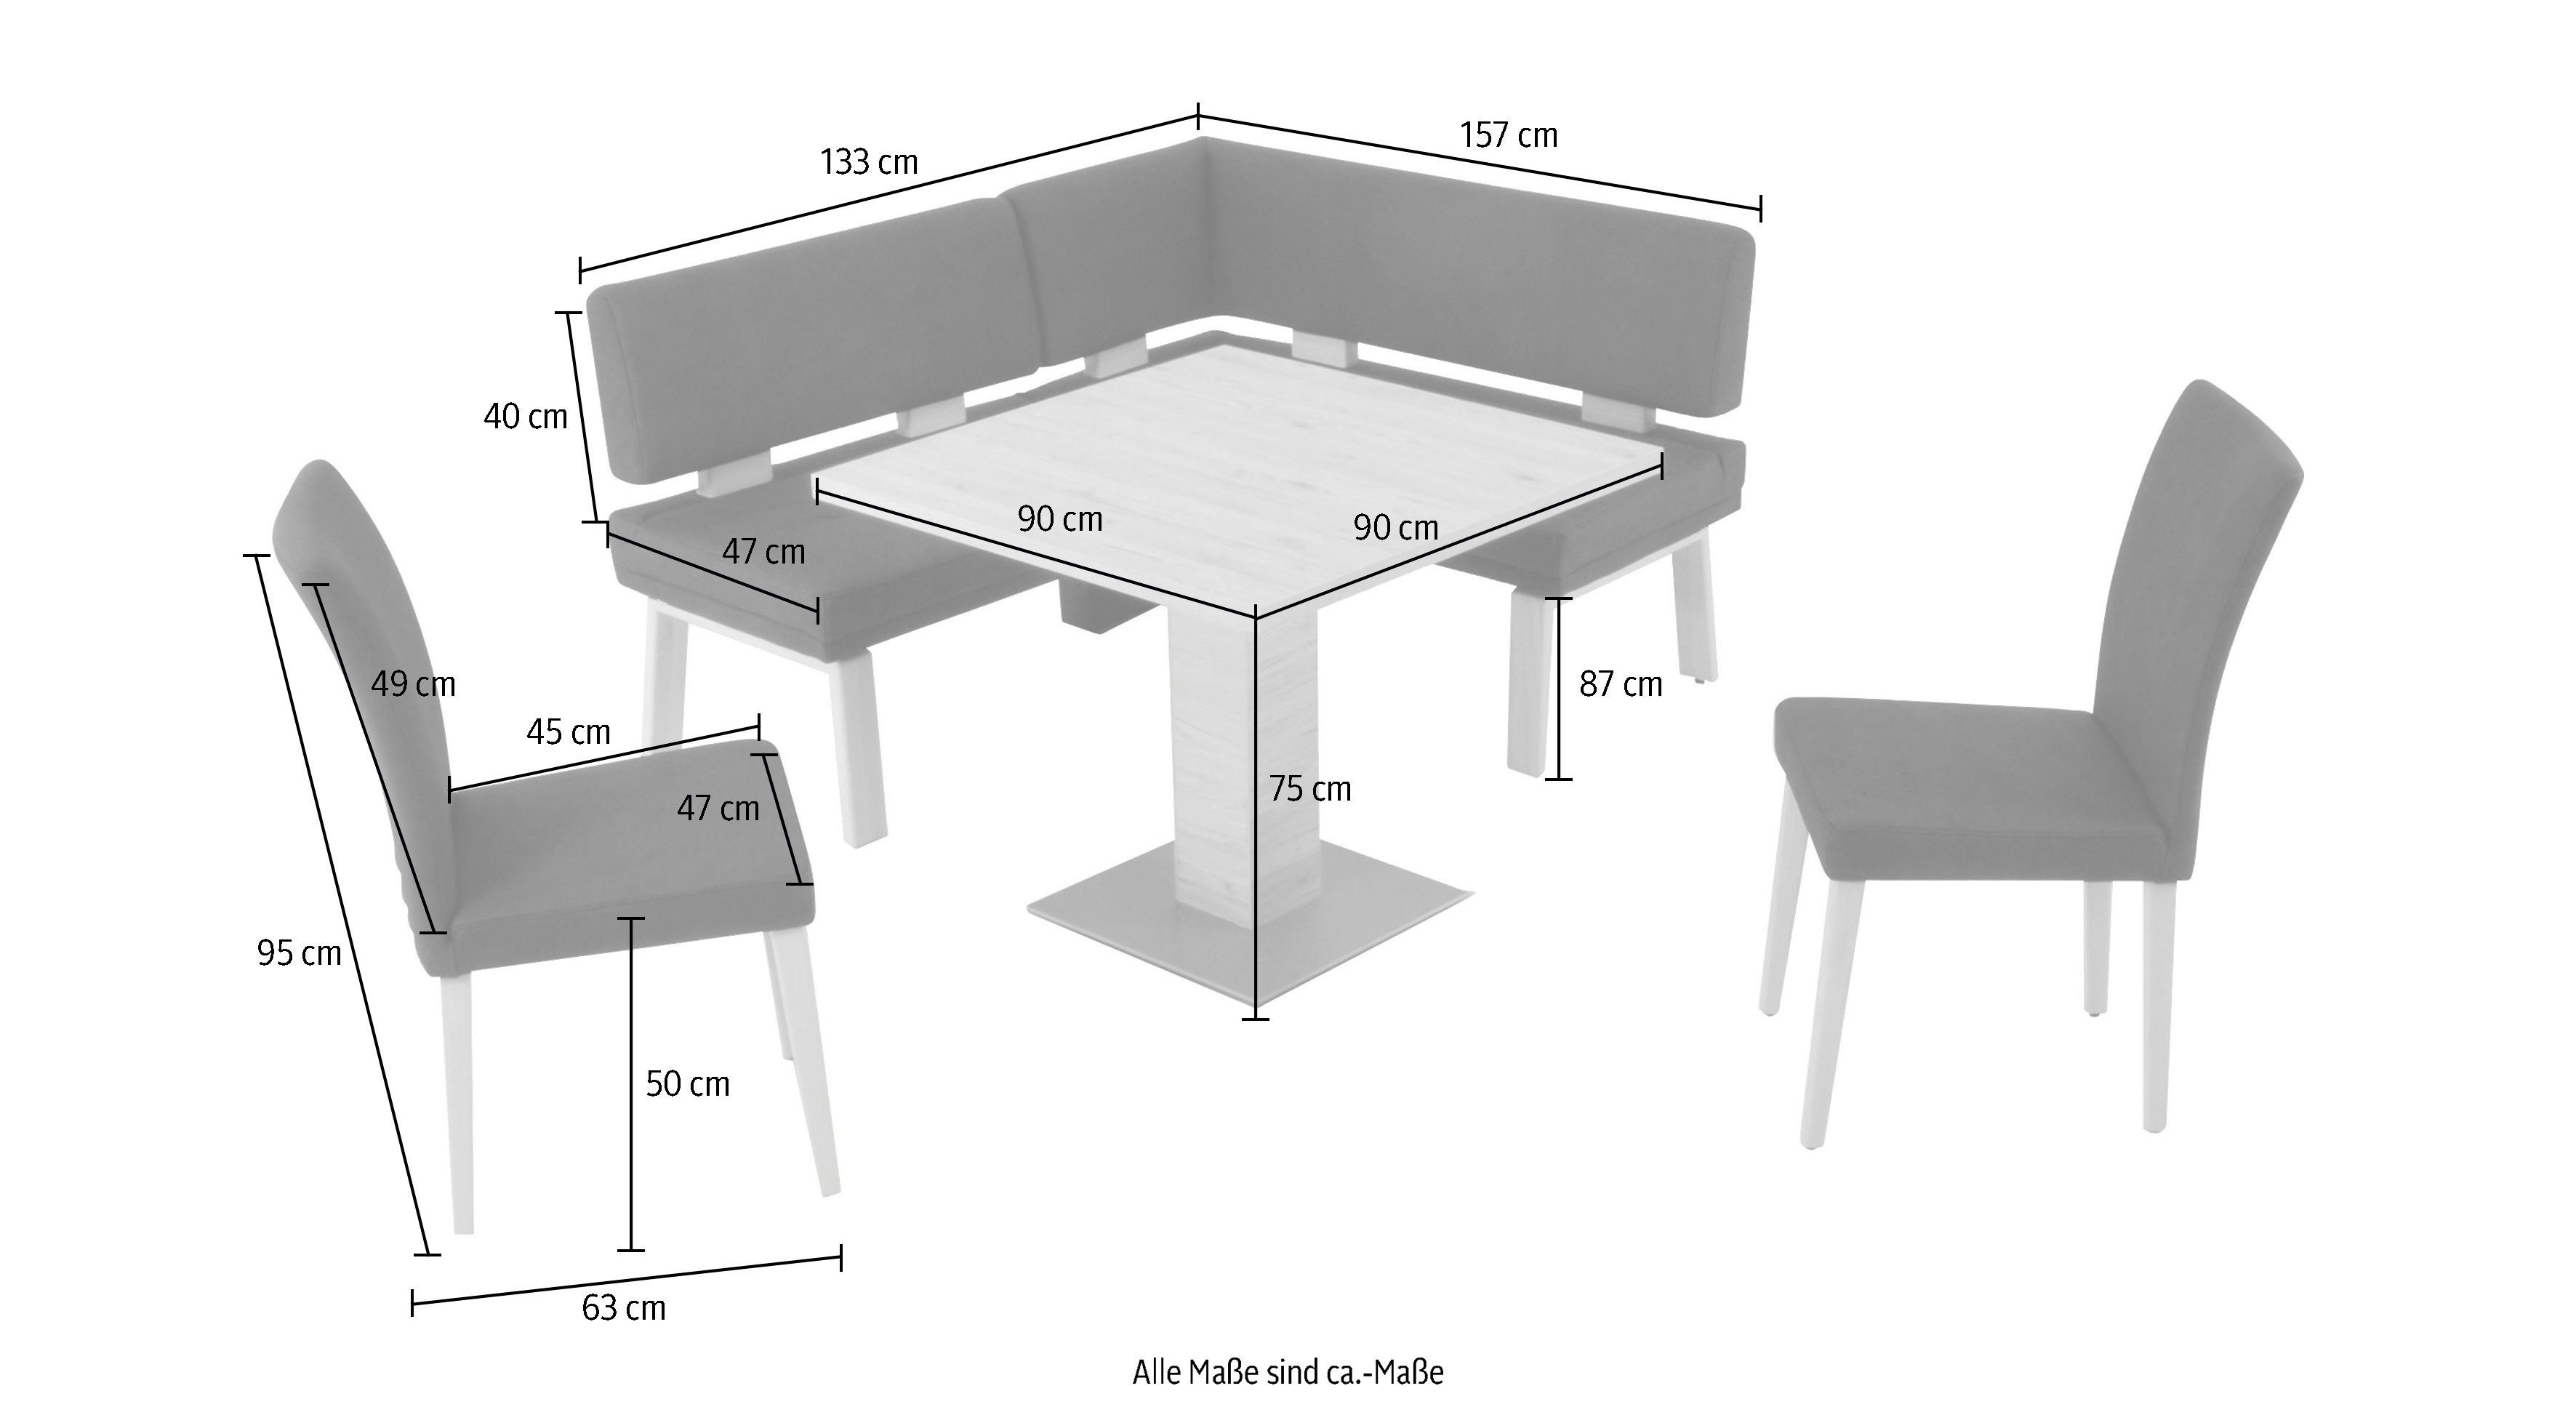 & 4 157cm, Schenkel K+W Tisch 90x90cm I, zwei Santos Eckbankgruppe rechts/links (Set), Holzstühle darkgrey und Wohnen Komfort